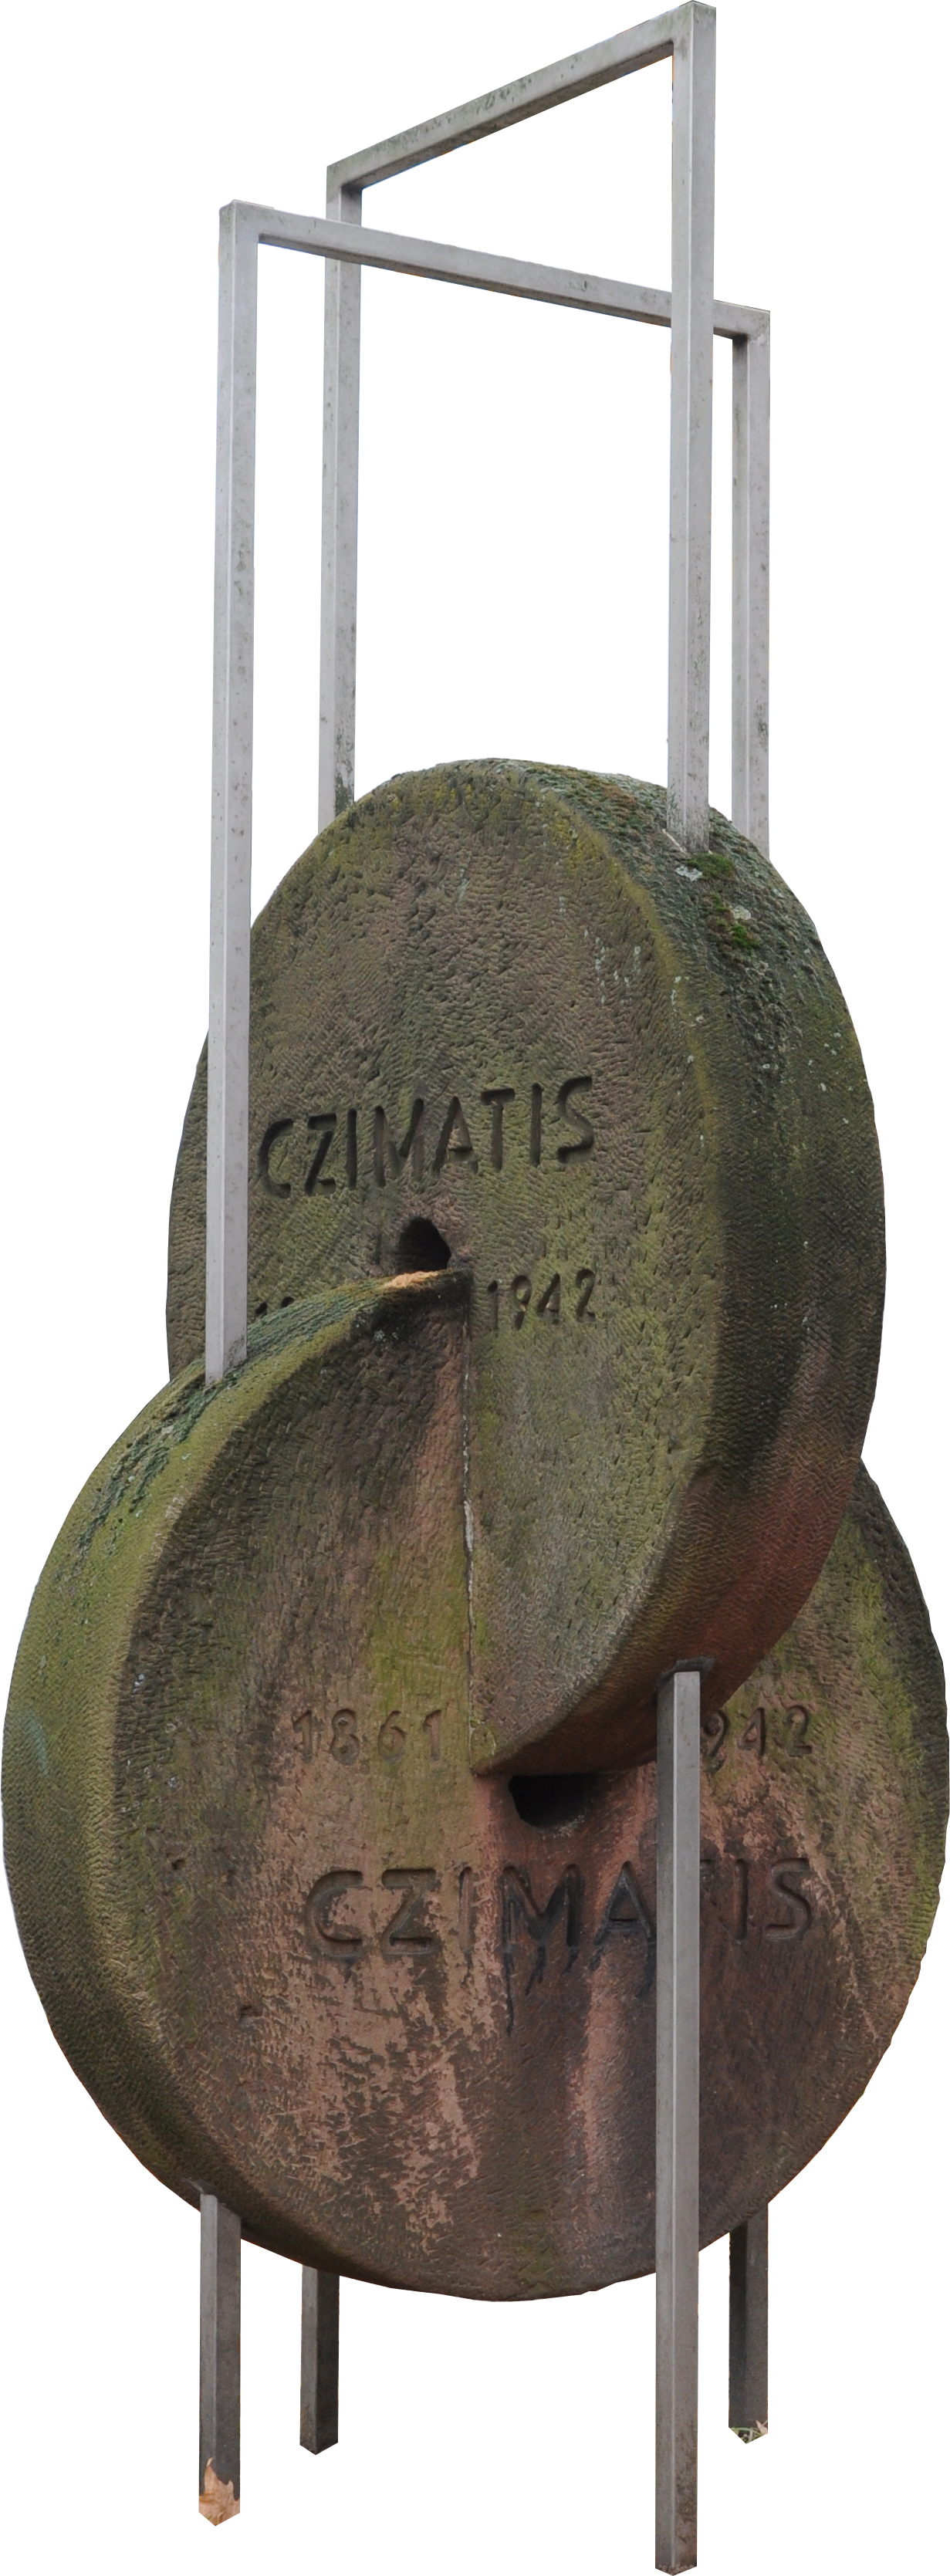 Czimatis-Denkmal in der Klingenstadt Solingen